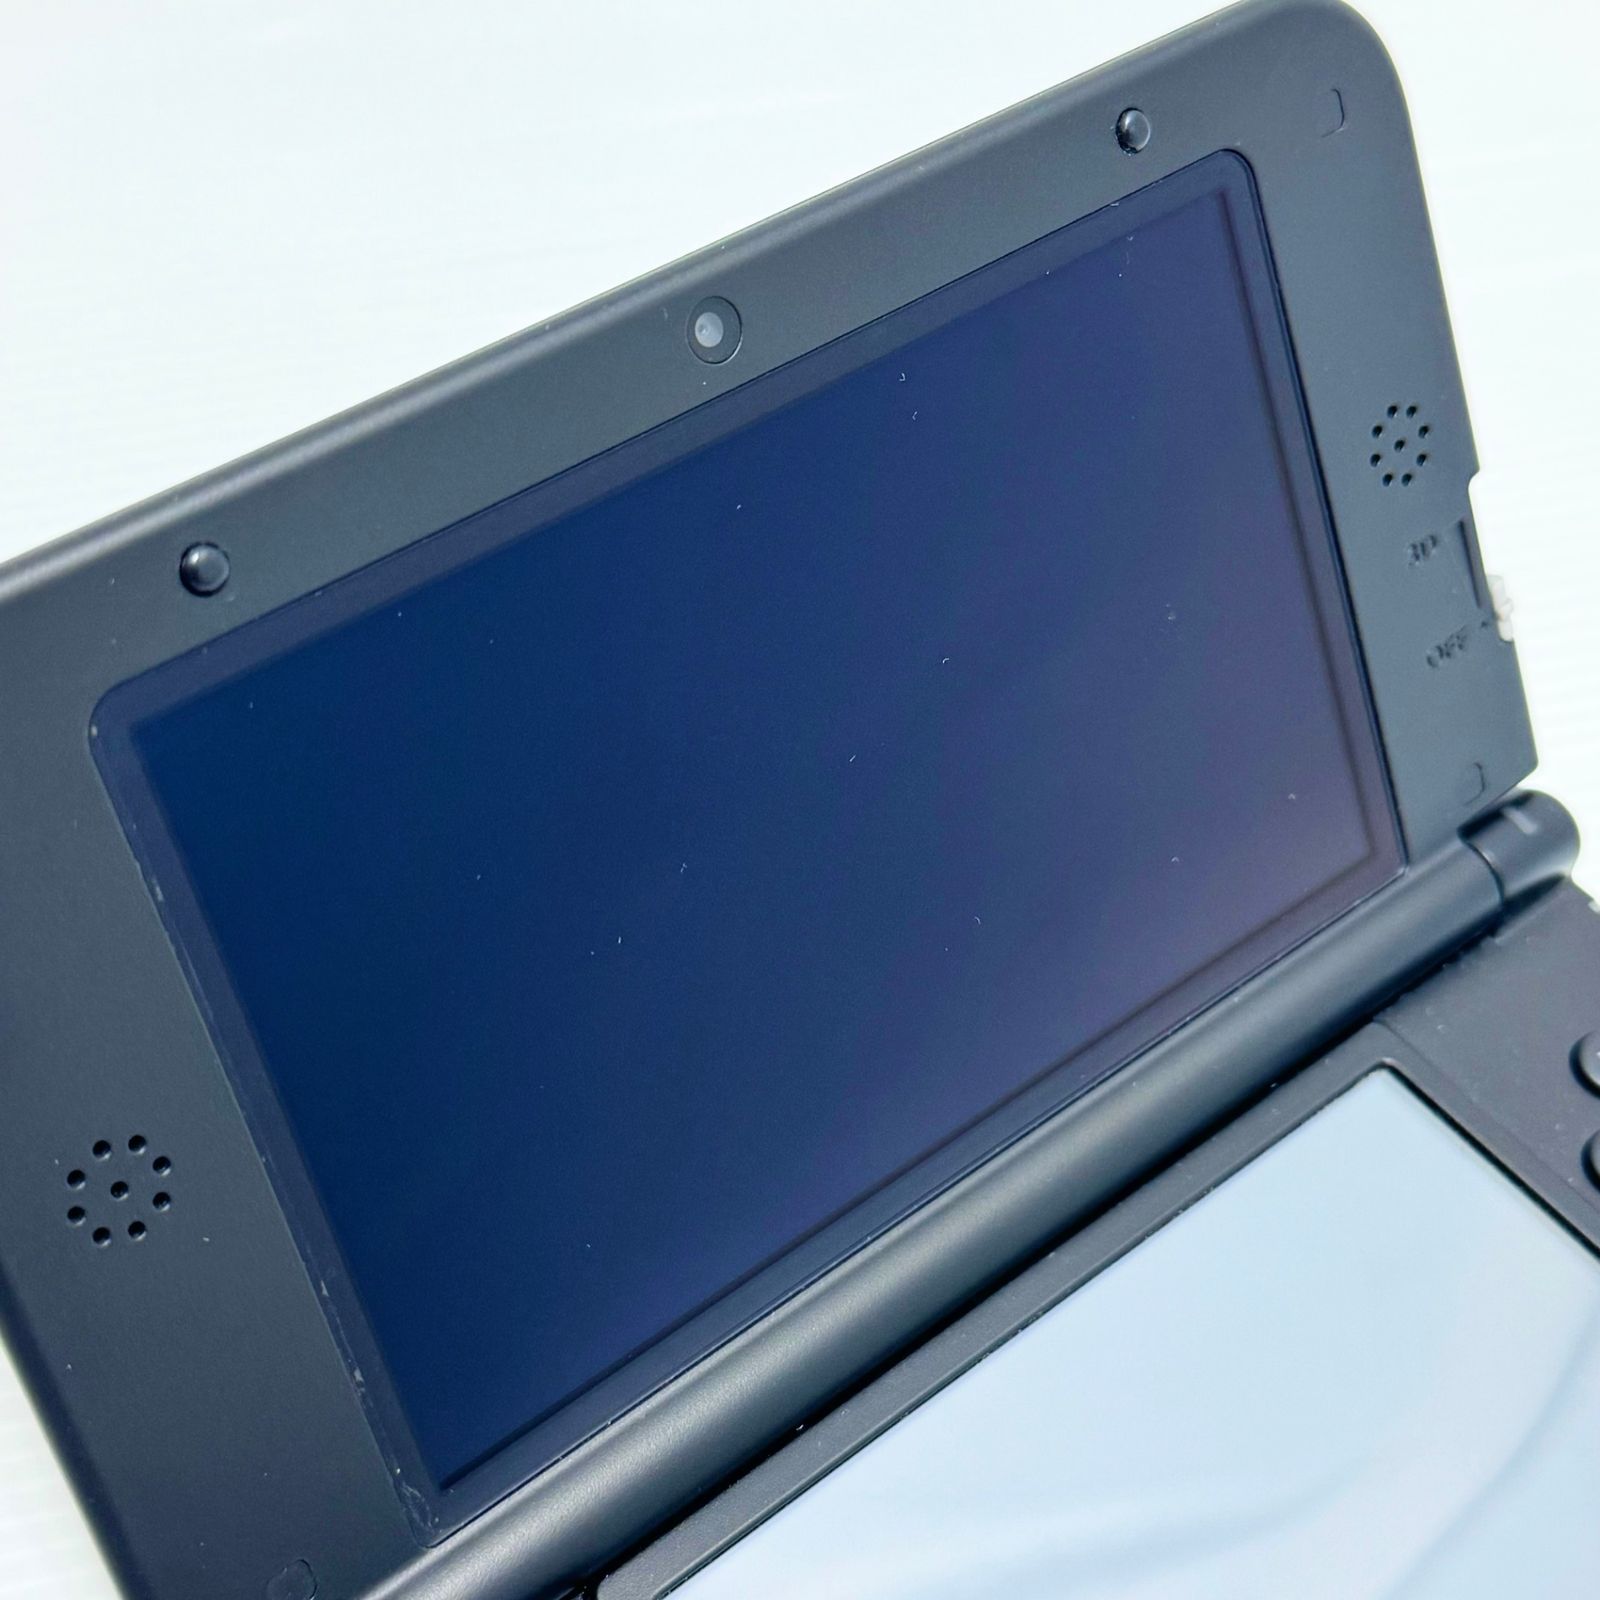 任天堂 3DS LLモンスターハンター4 スペシャルパック (ゴア・マガラ 